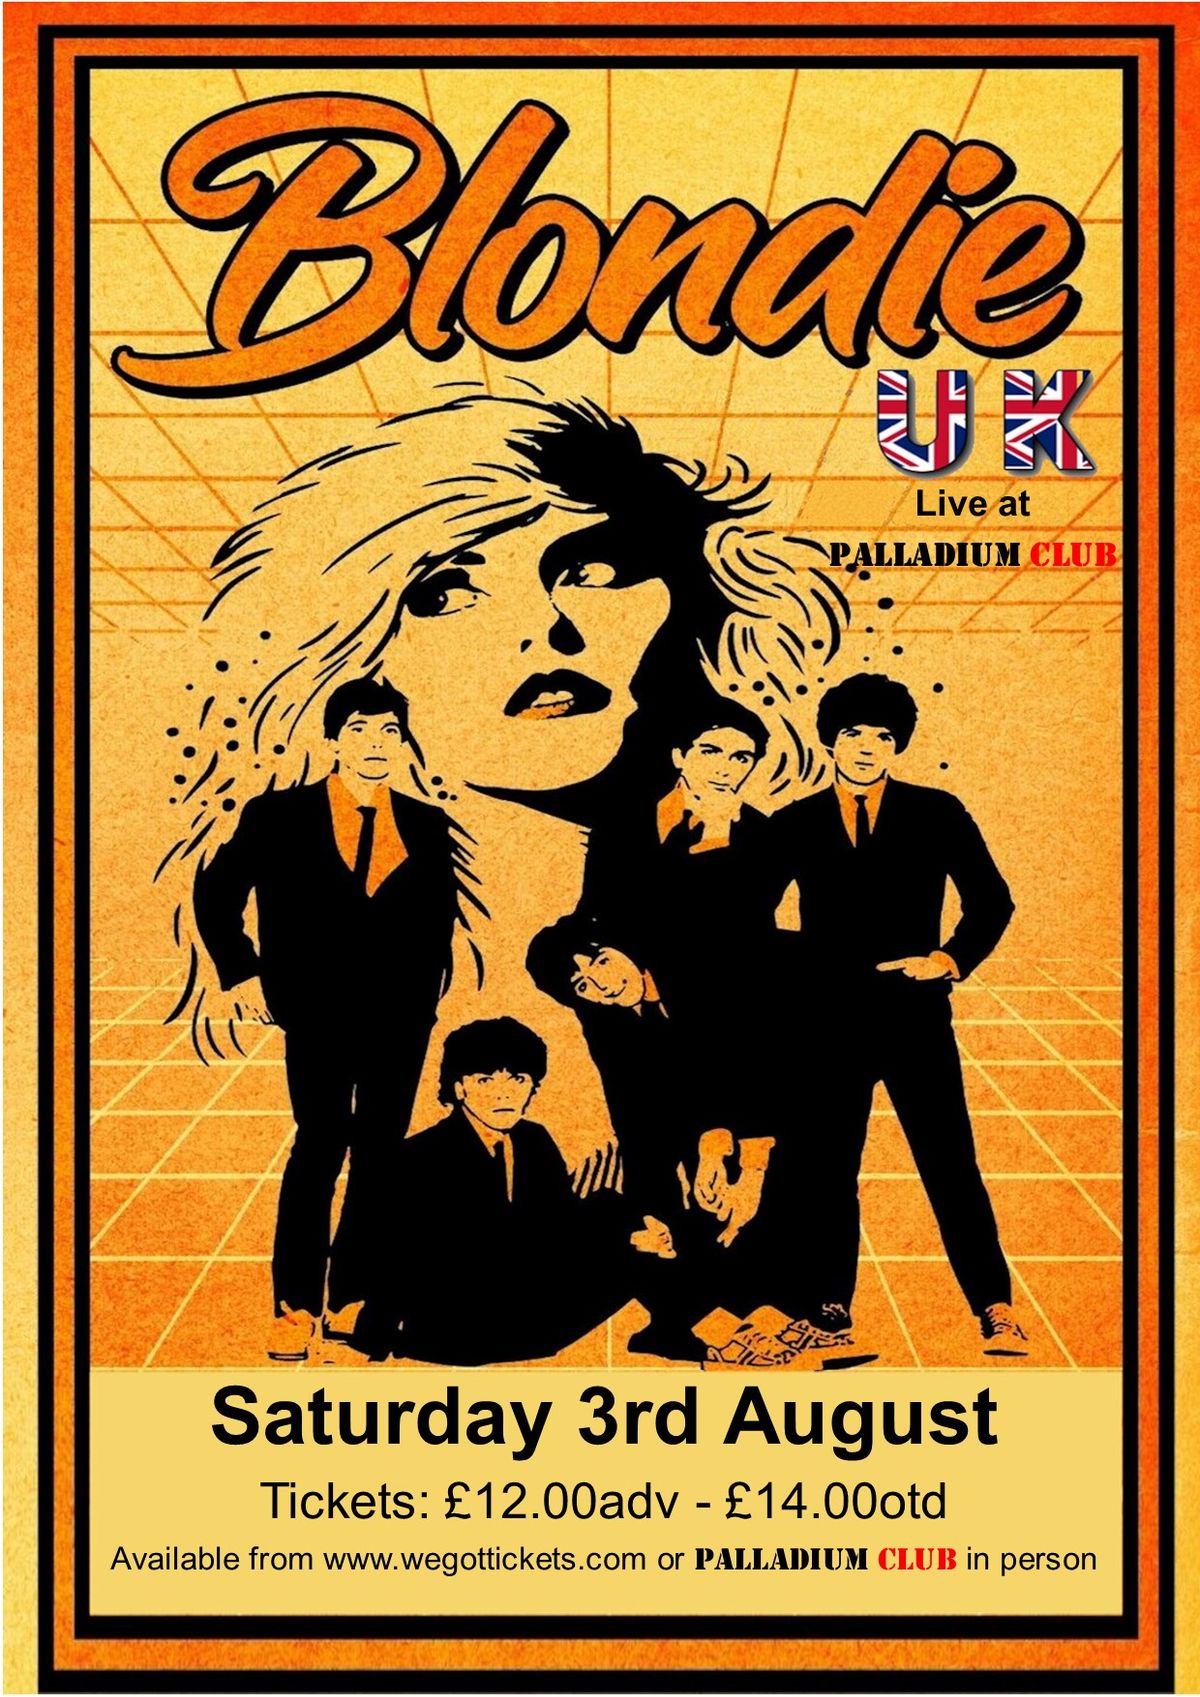 Blondie UK